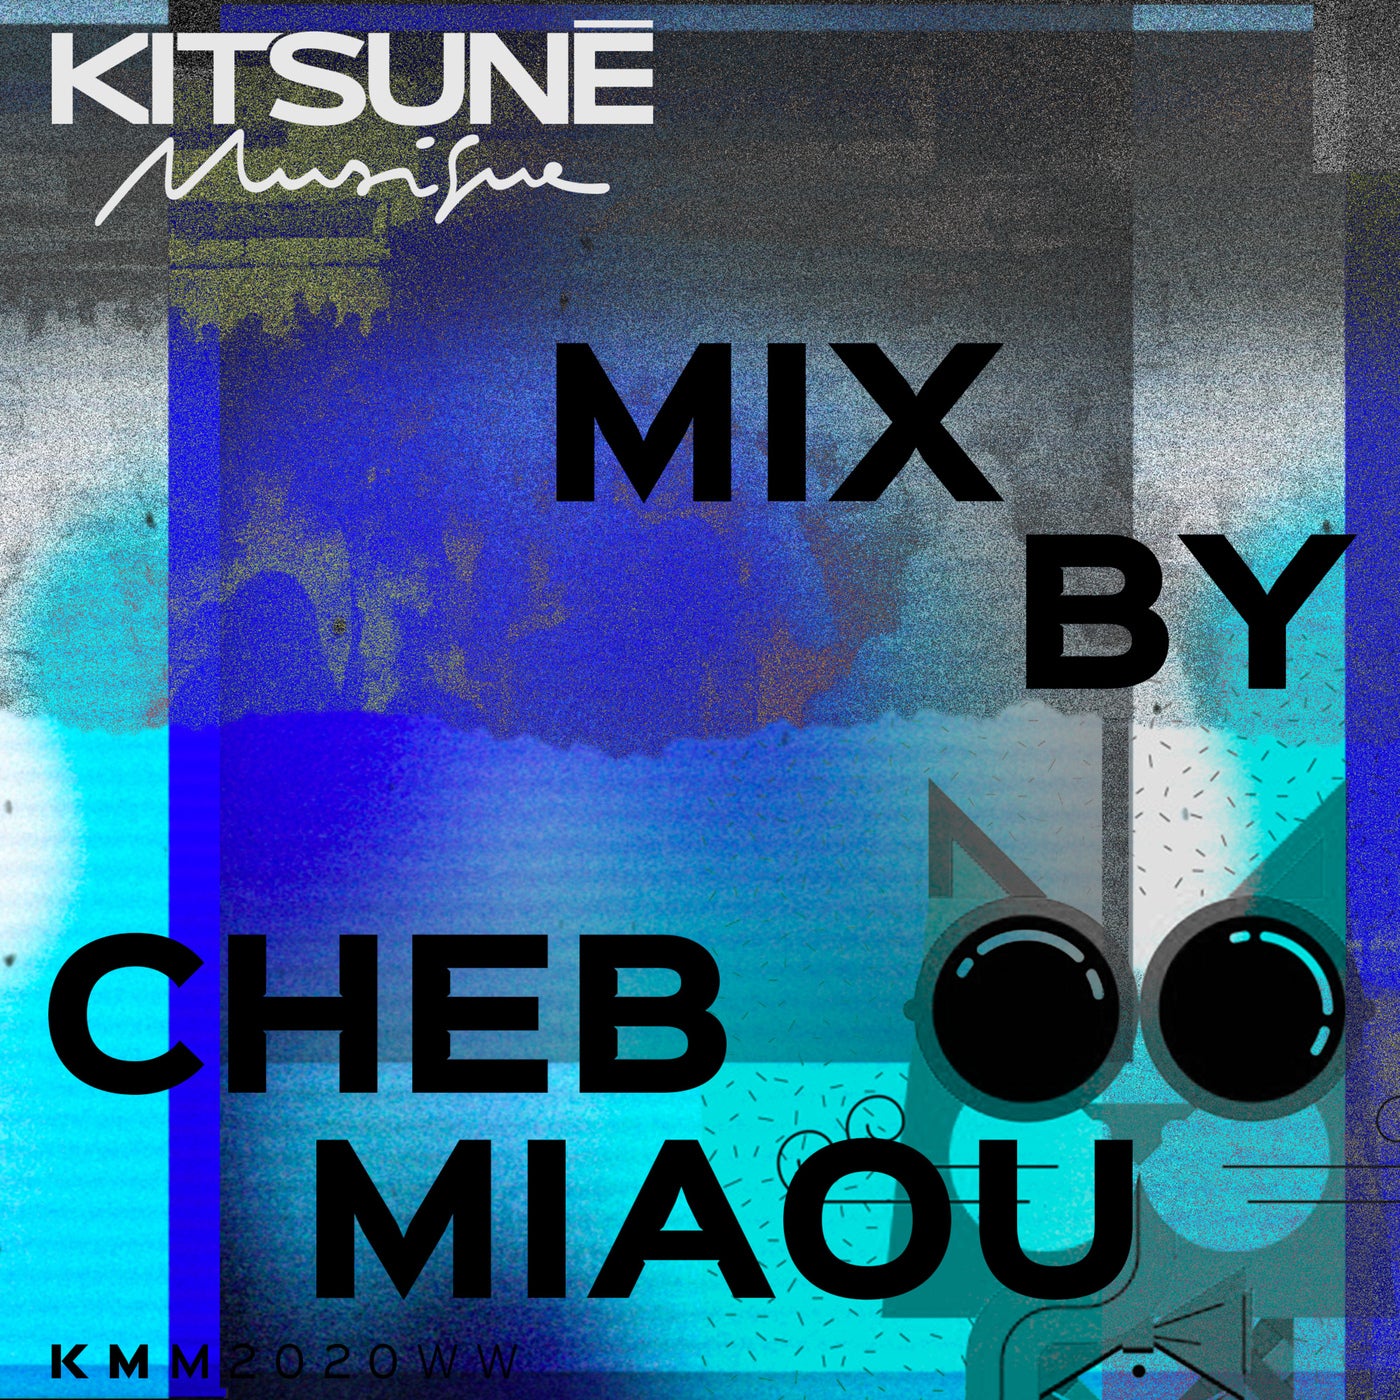 Kitsune Musique Mixed by Cheb Miaou